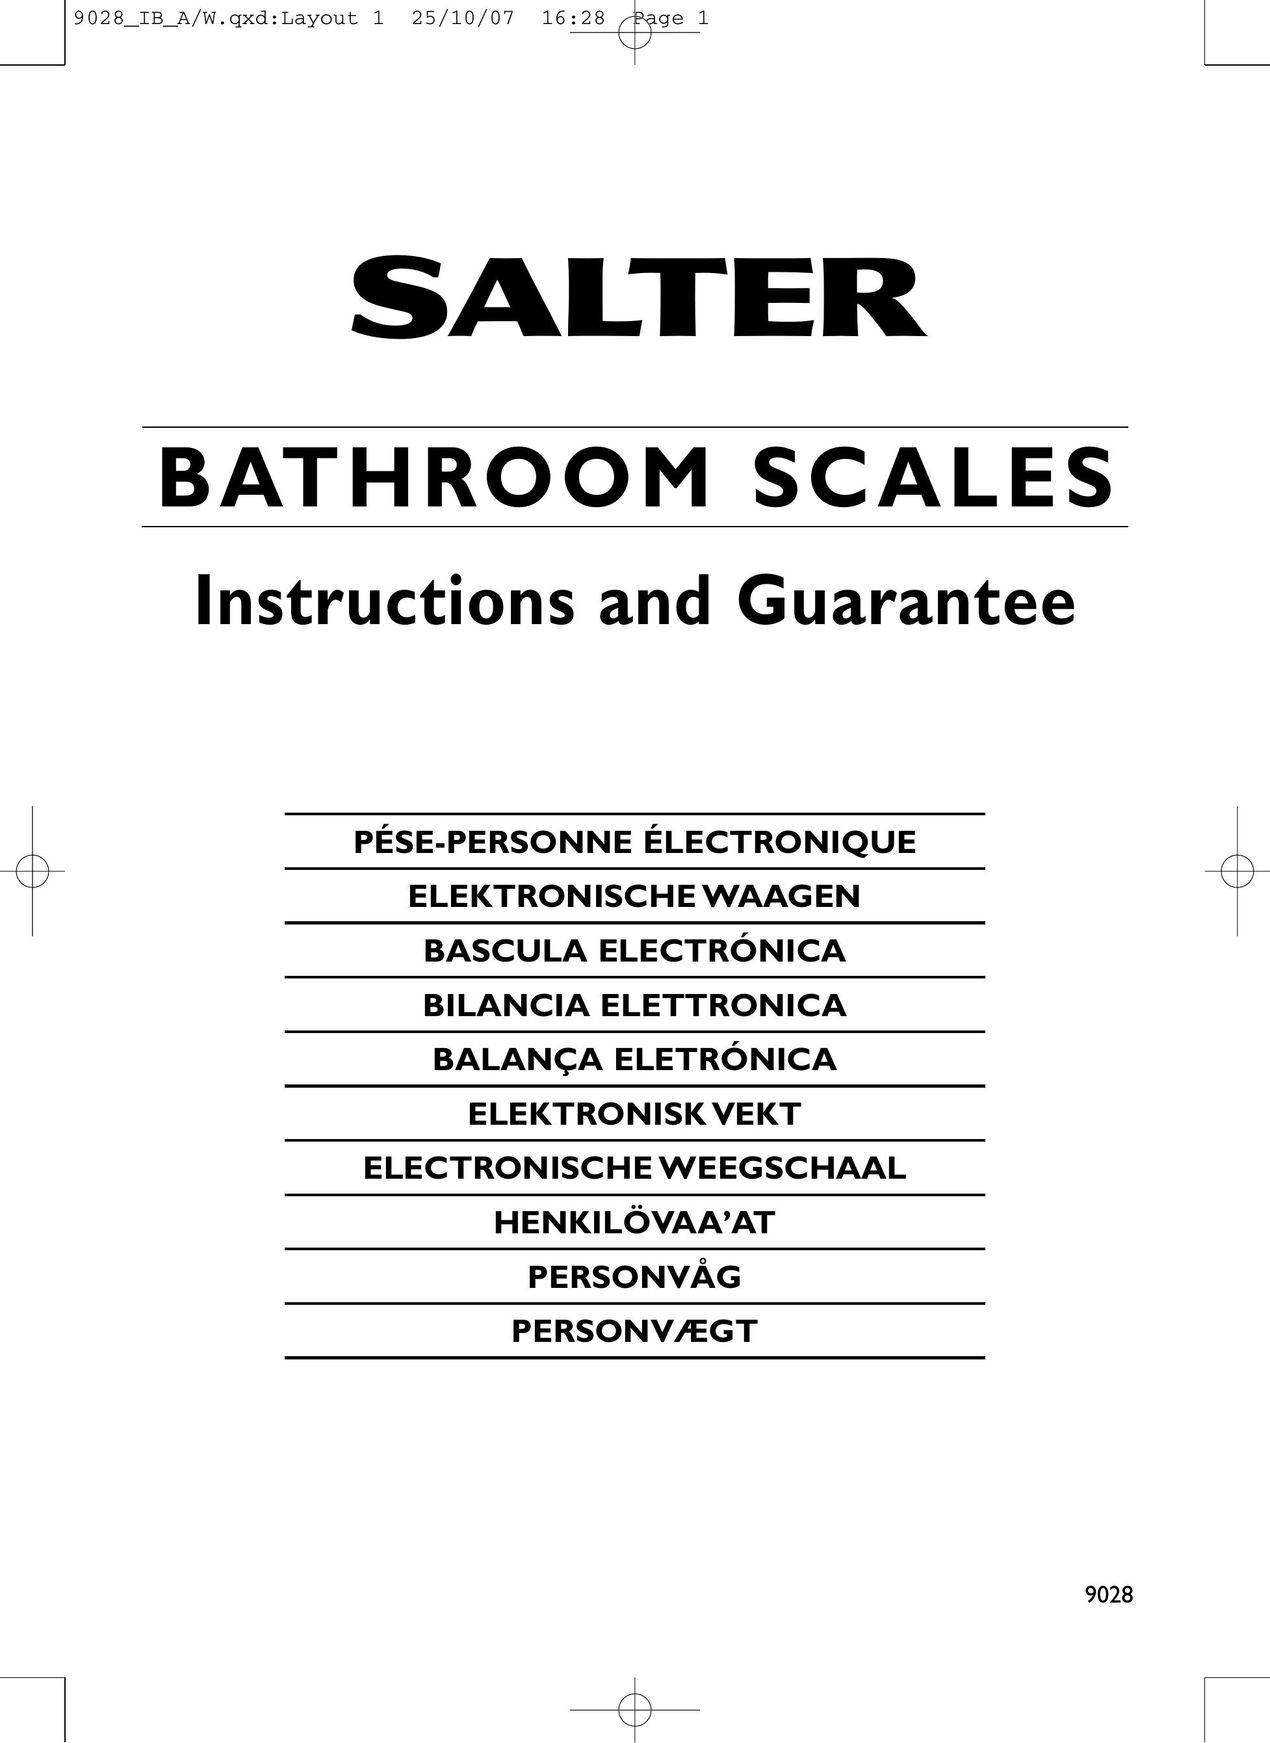 Salter Housewares 9028 Building Set User Manual